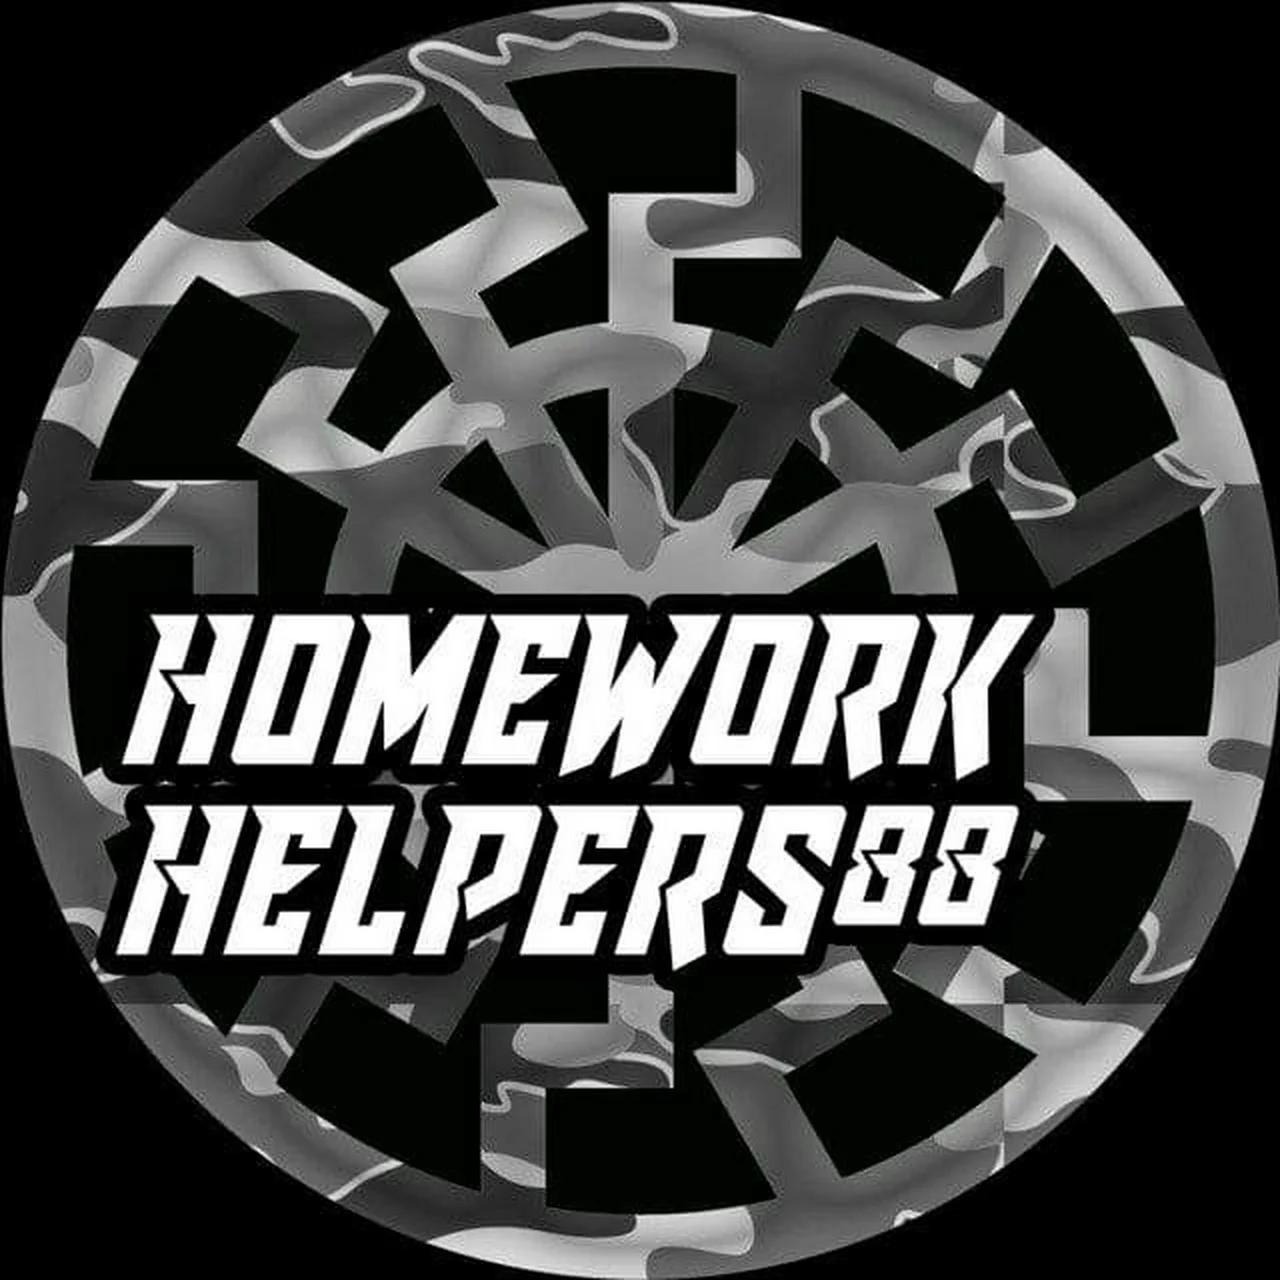 homework helpers 88 discord